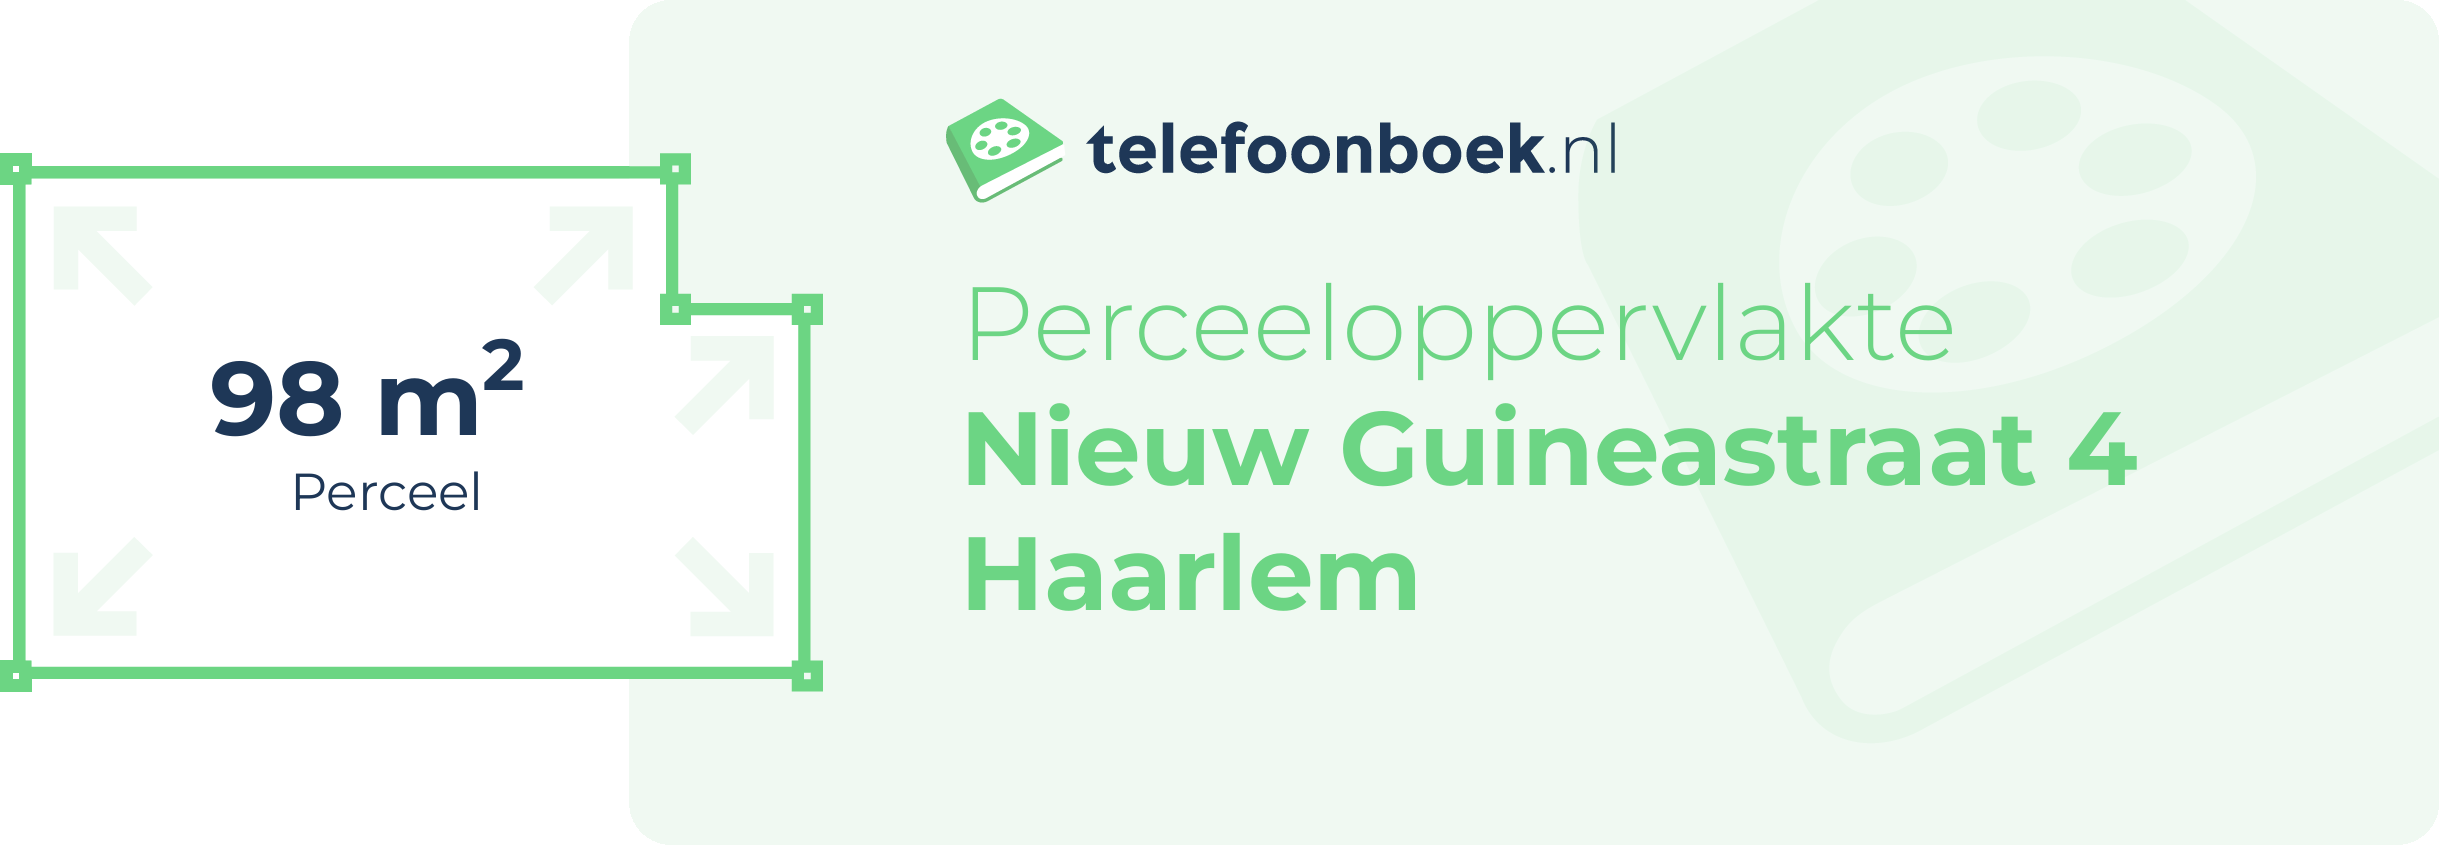 Perceeloppervlakte Nieuw Guineastraat 4 Haarlem